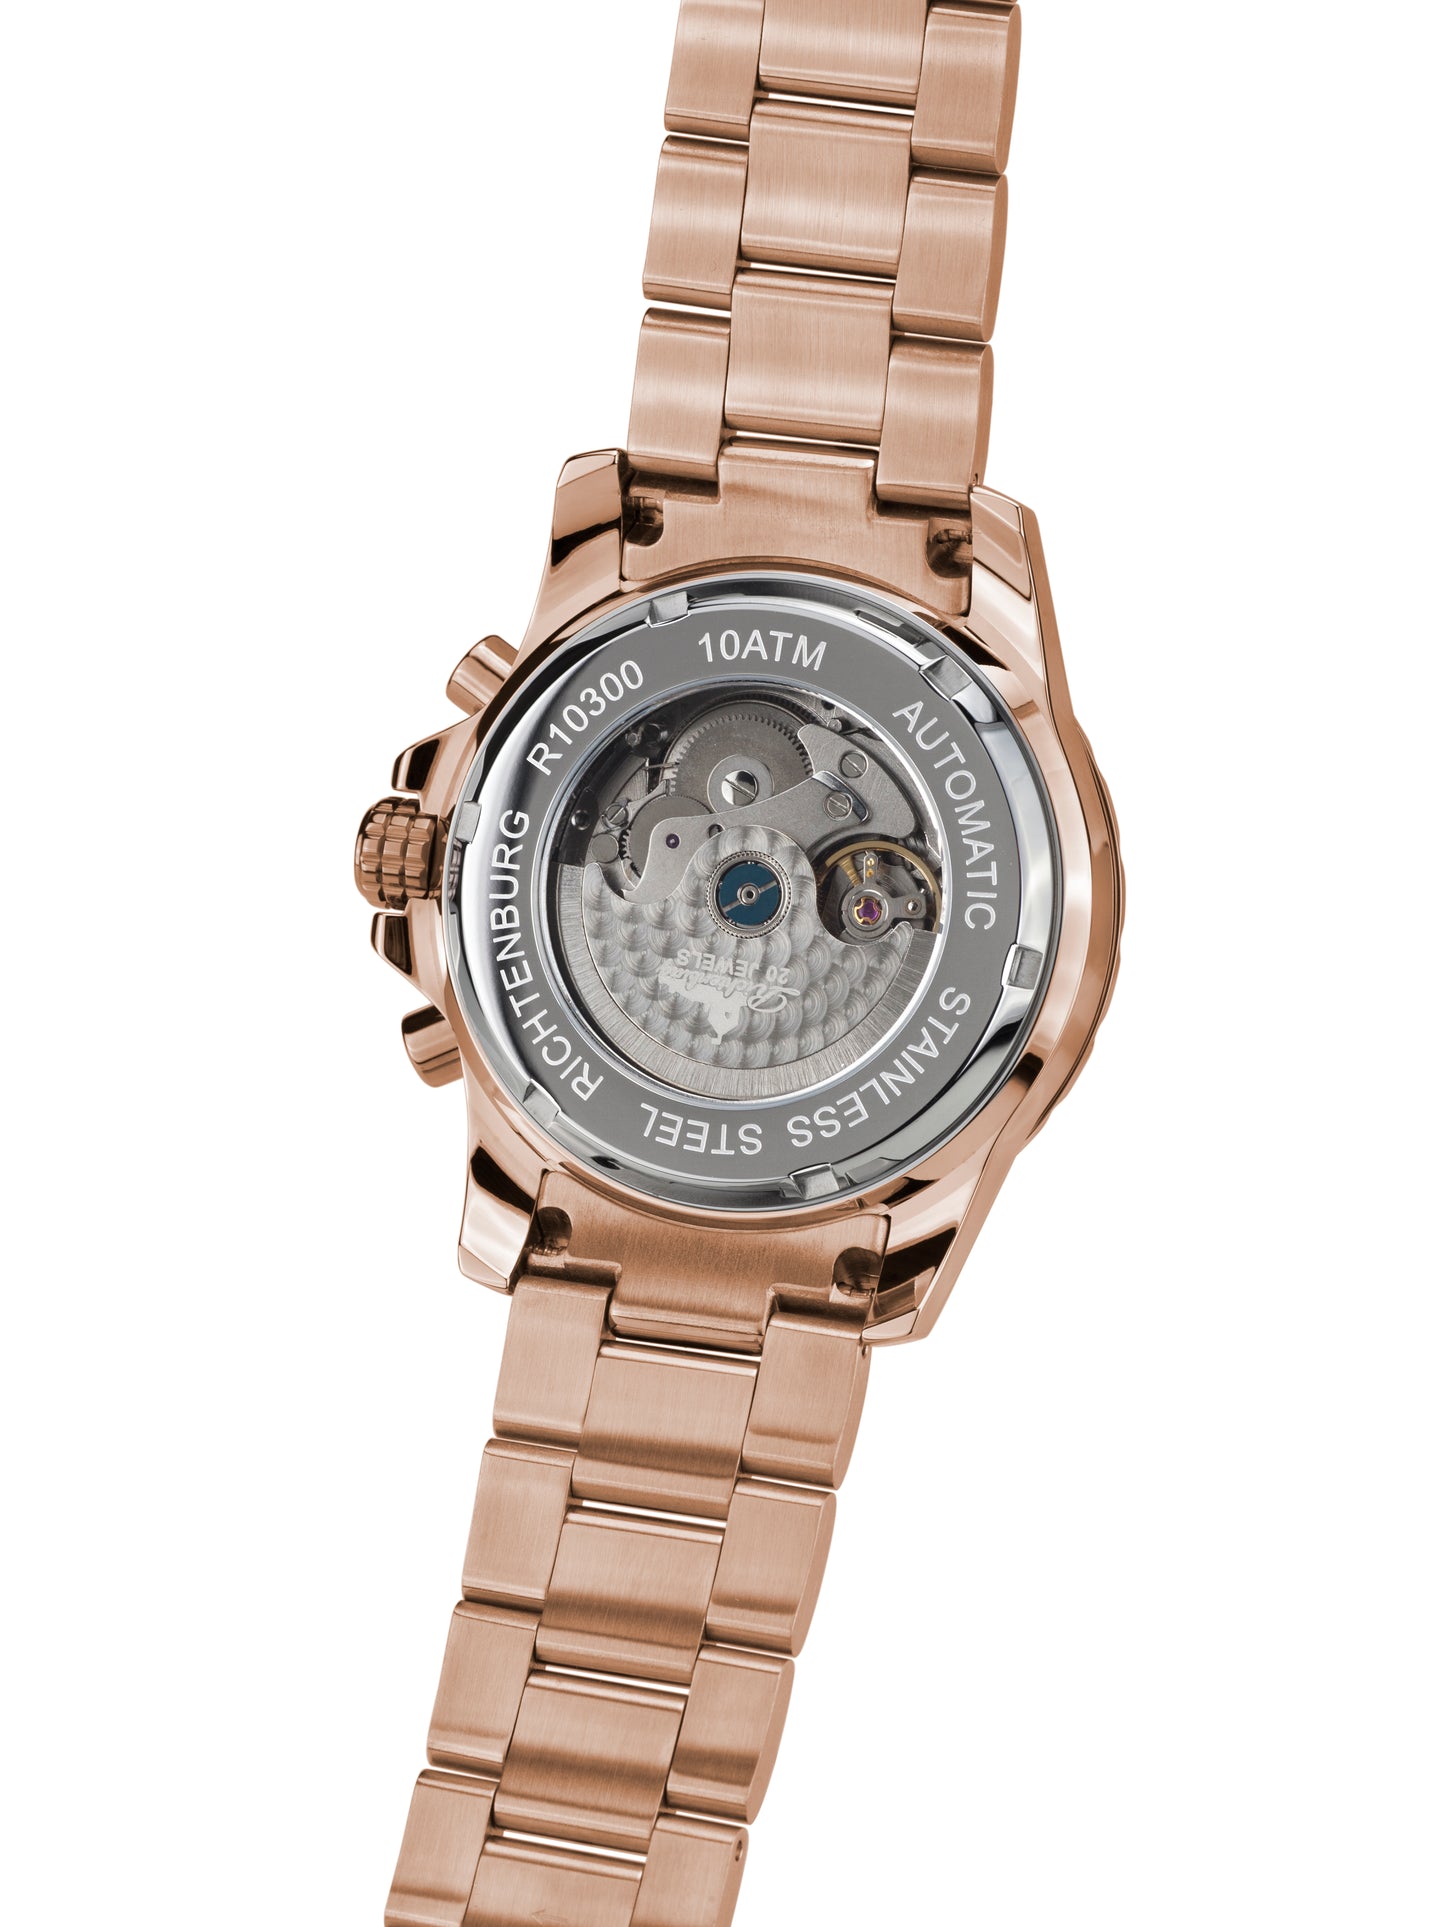 Automatic watches — Romantica — Richtenburg — rosegold IP black steel